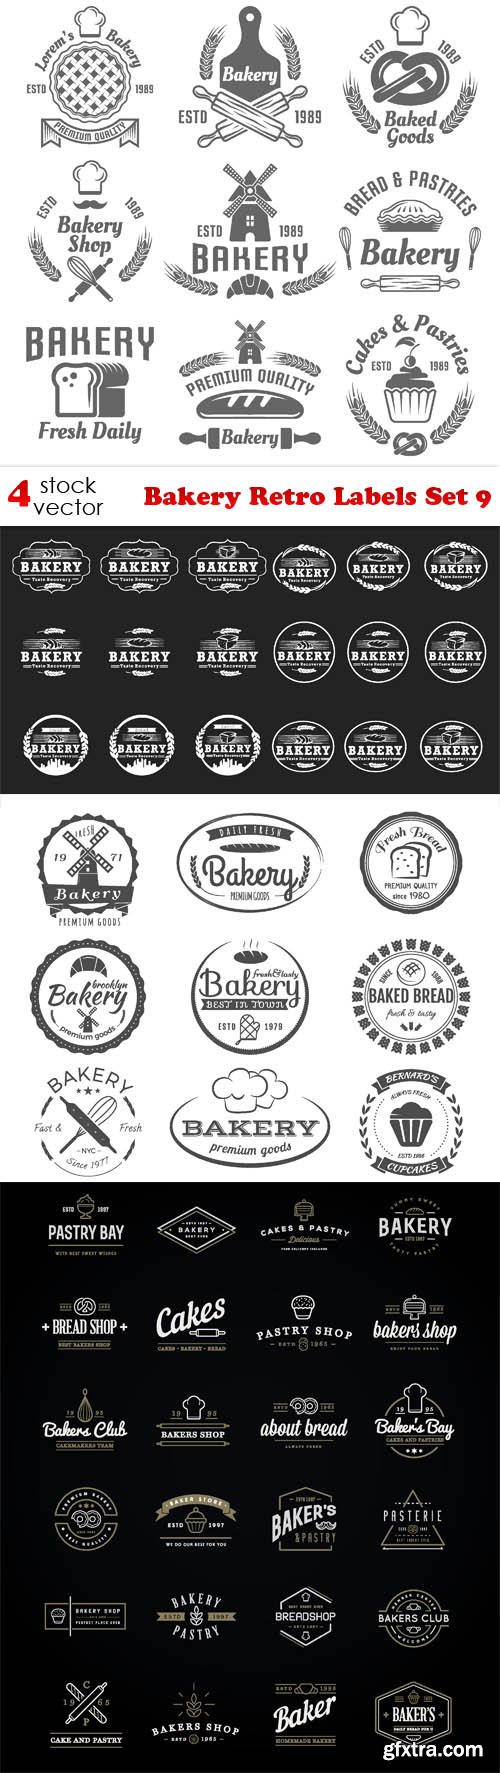 Vectors - Bakery Retro Labels Set 9